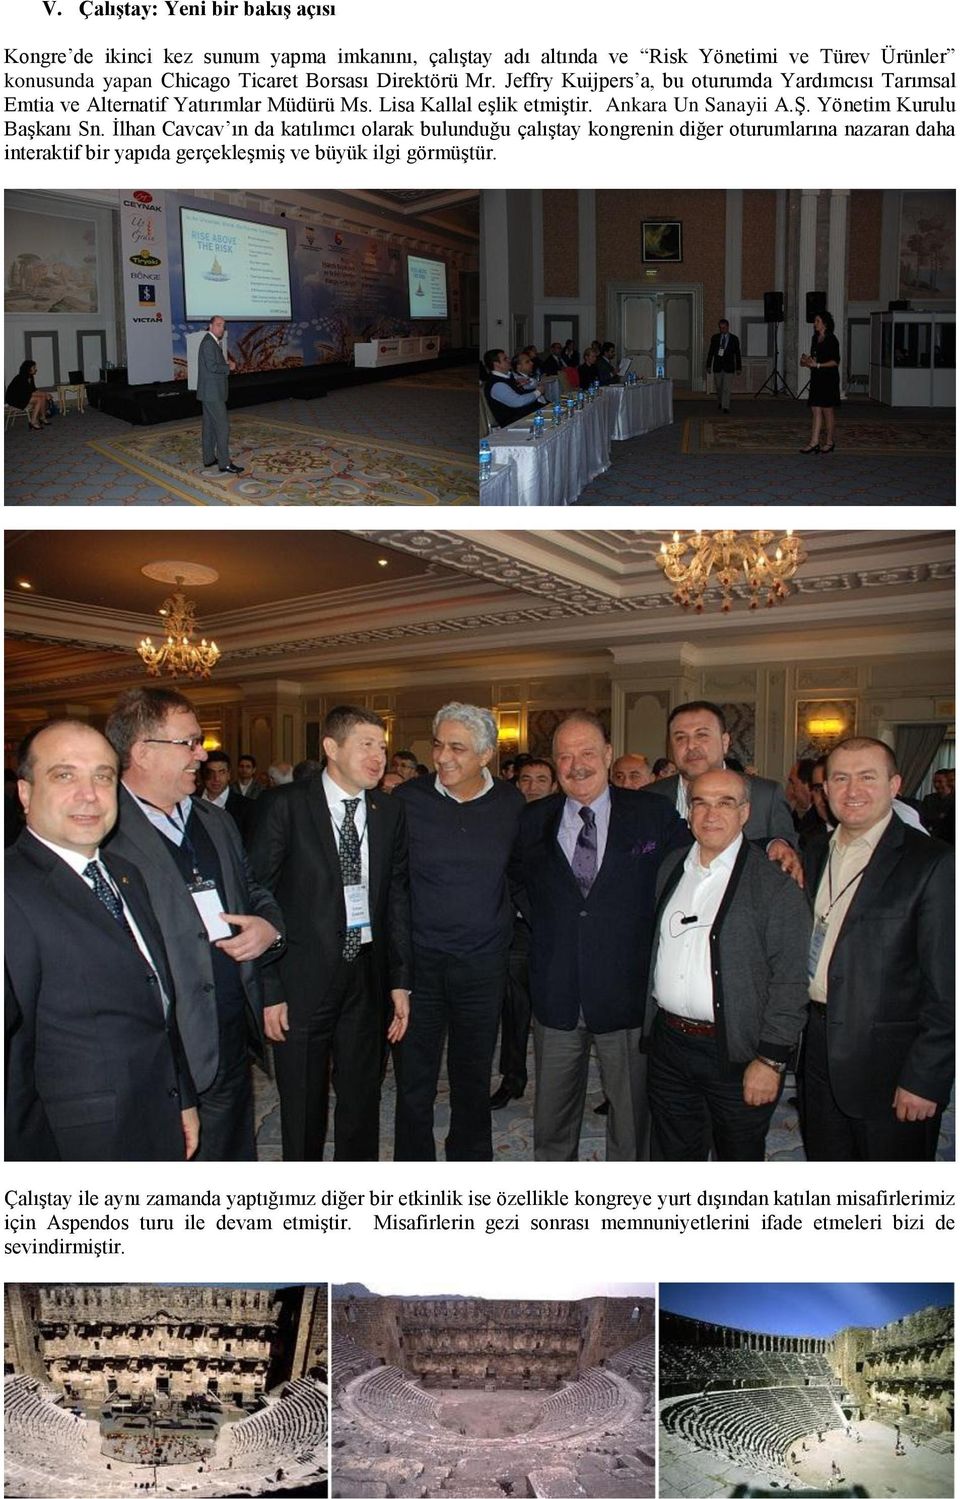 İlhan Cavcav ın da katılımcı olarak bulunduğu çalıştay kongrenin diğer oturumlarına nazaran daha interaktif bir yapıda gerçekleşmiş ve büyük ilgi görmüştür.